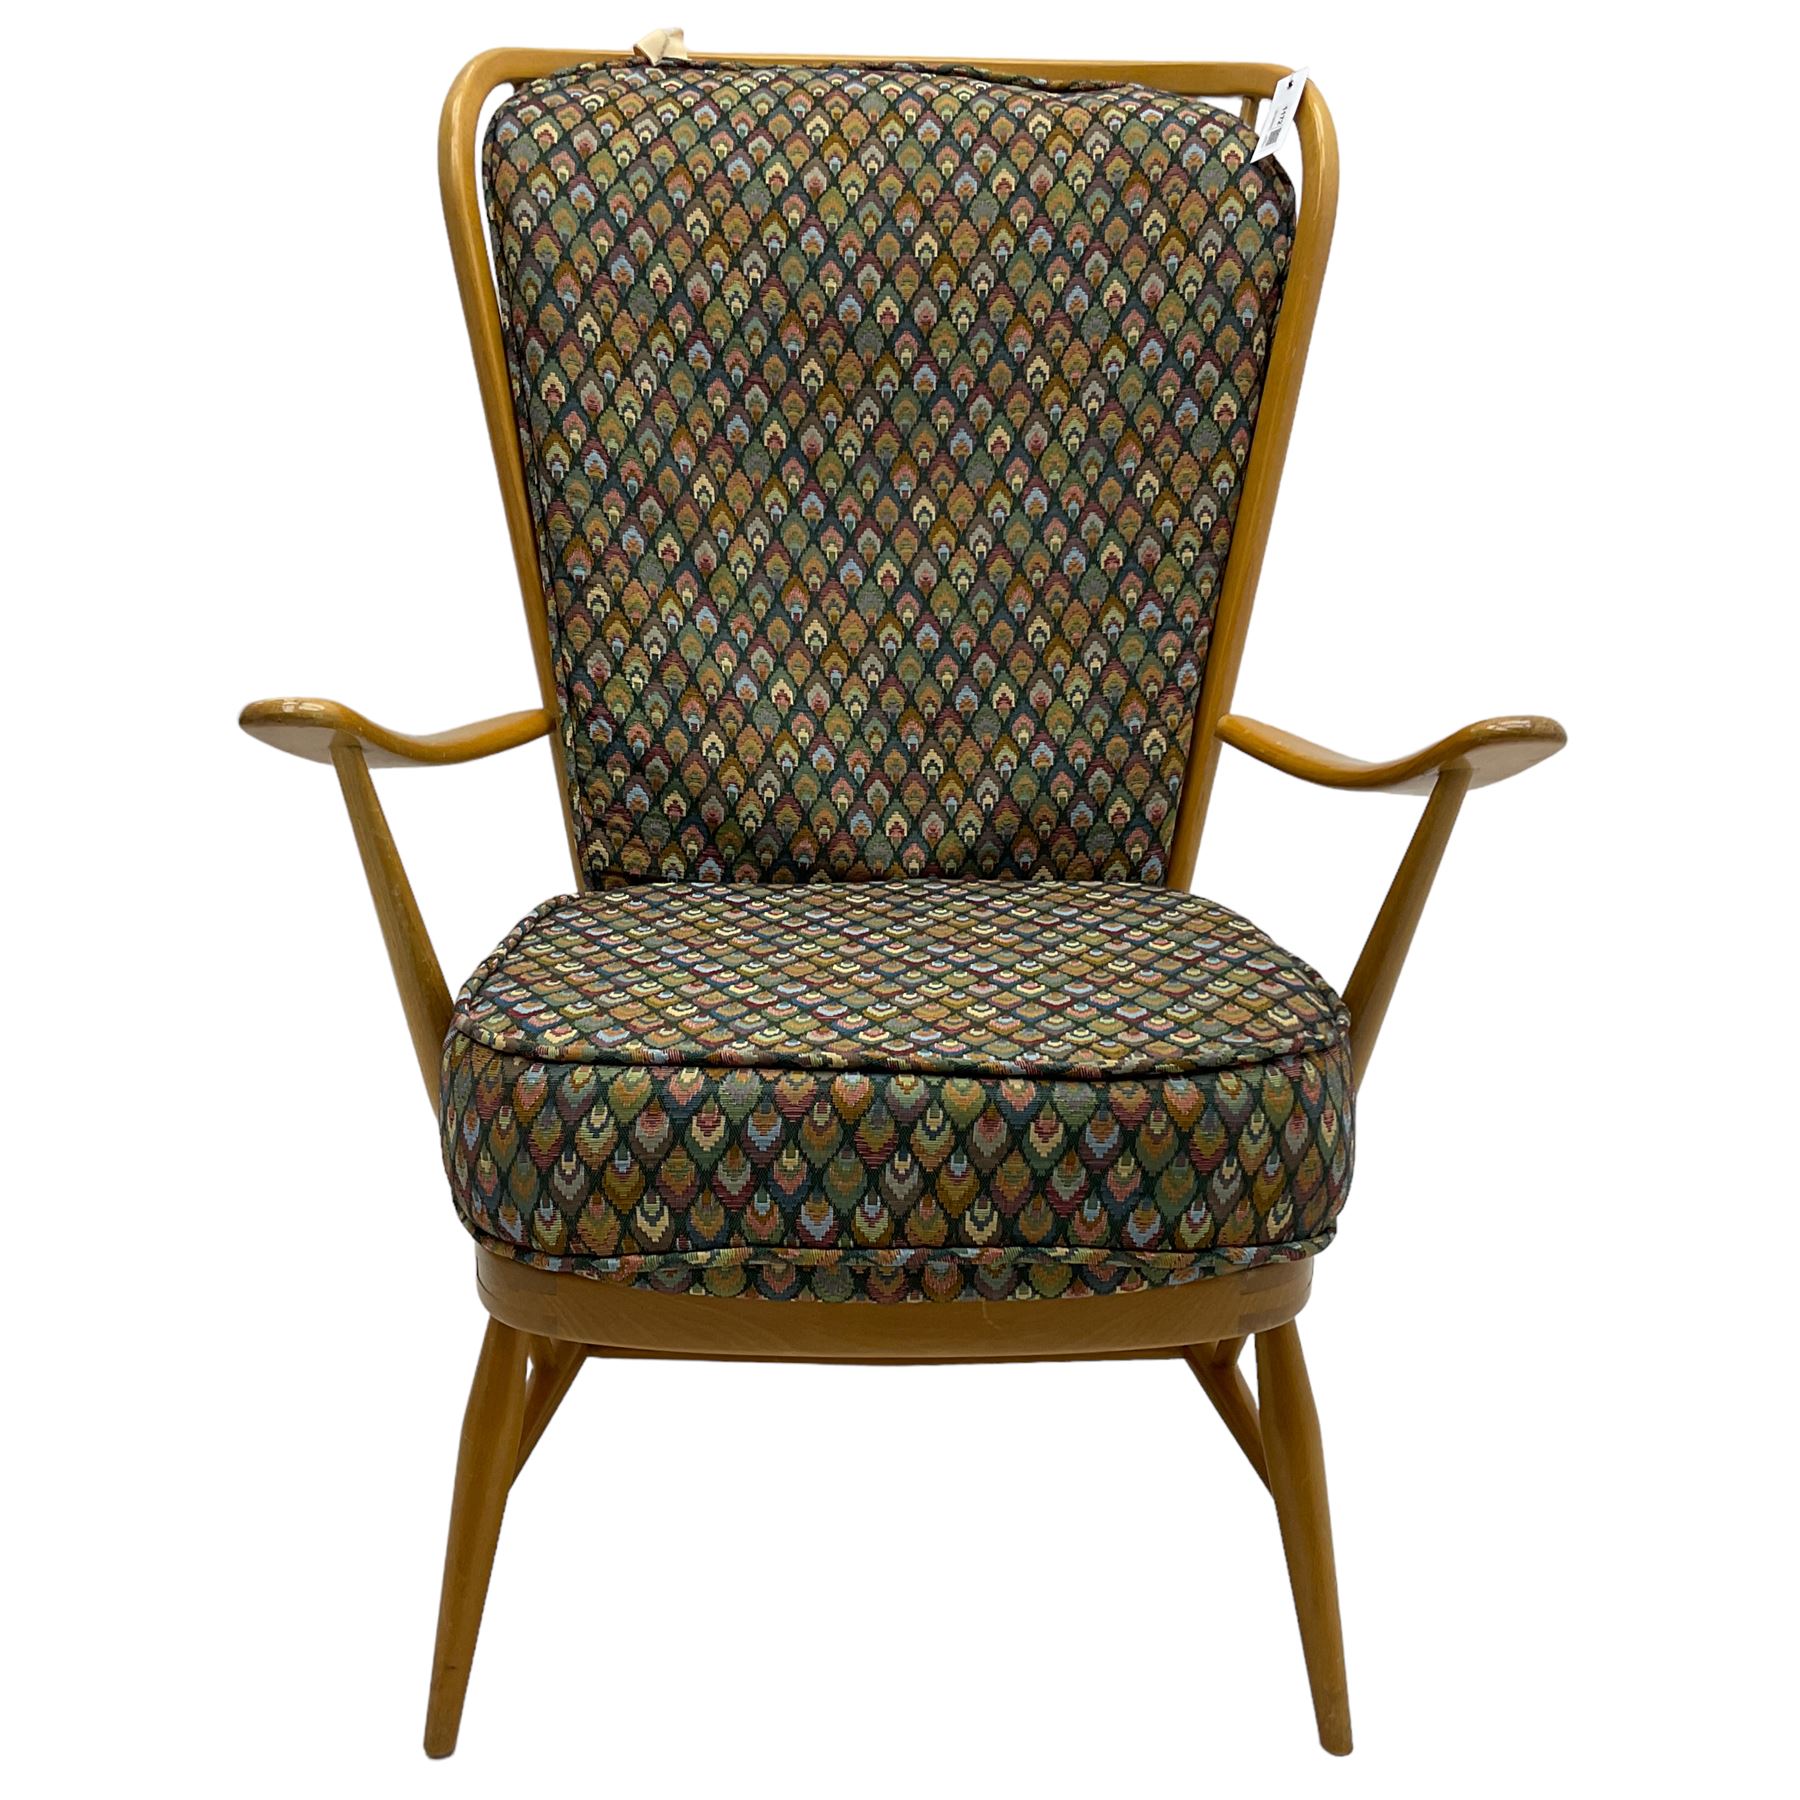 Ercol - light beech framed high-back 'Windsor' easy chair - Image 6 of 7